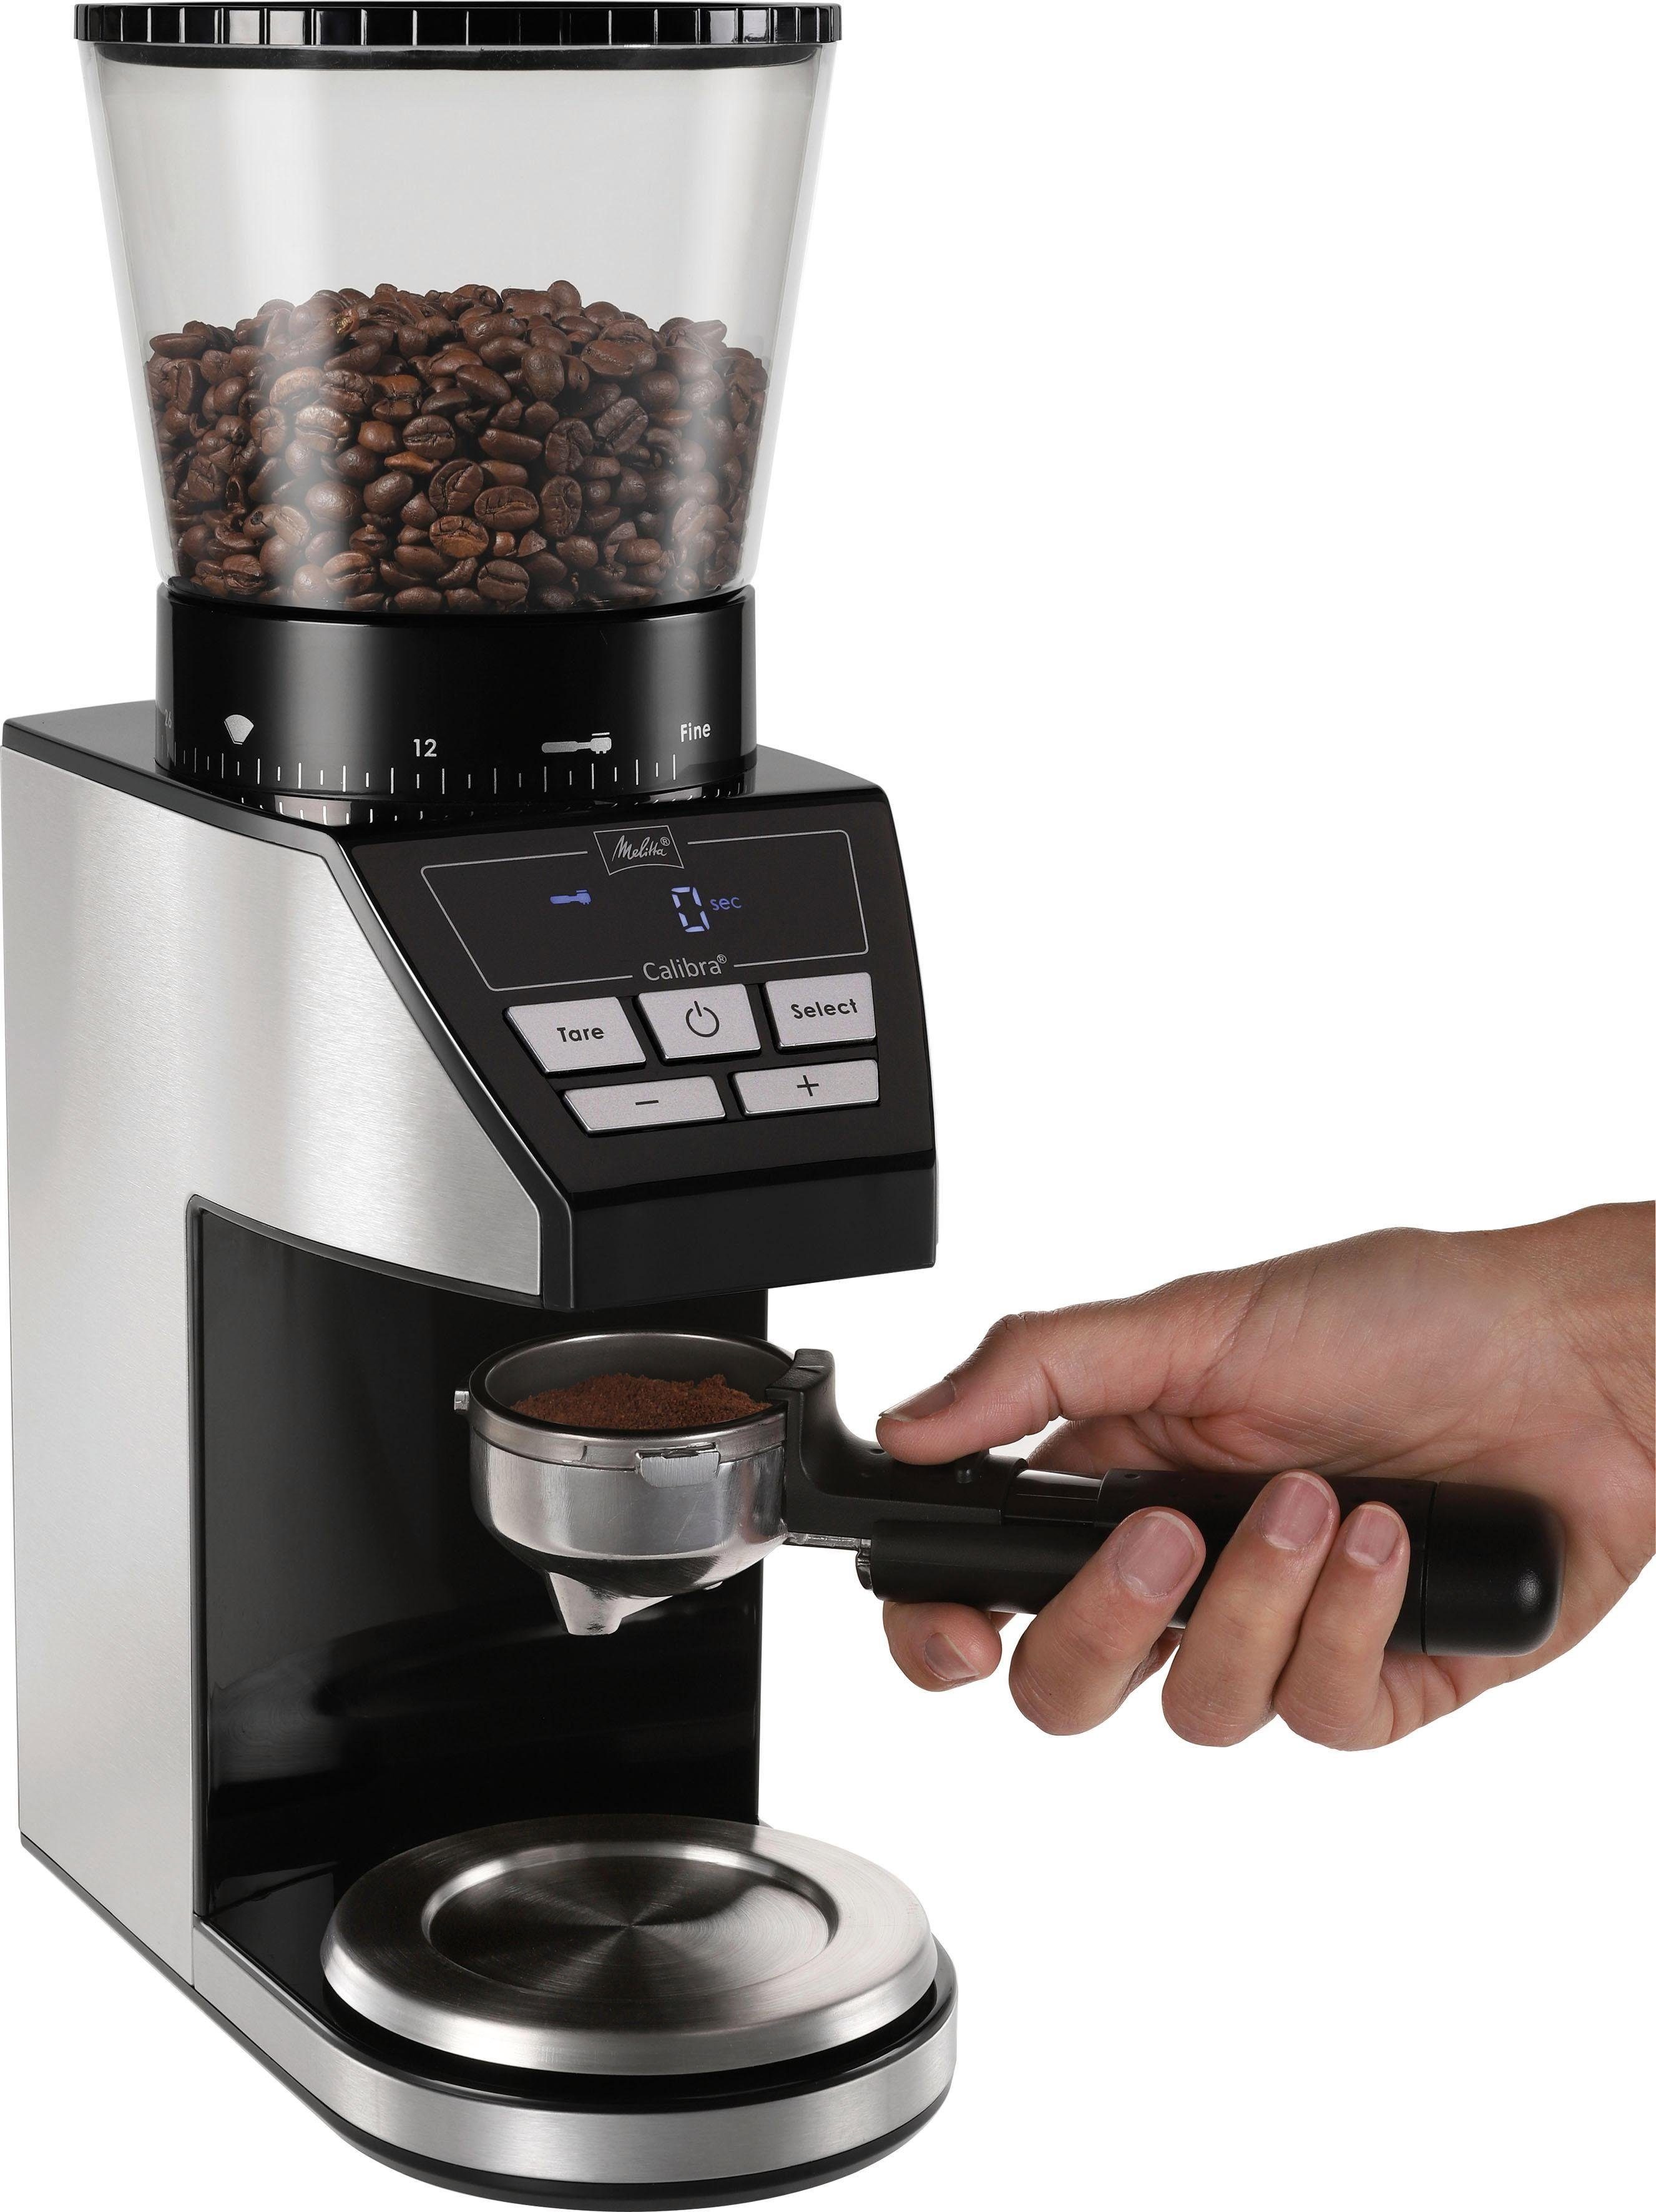 Melitta Kaffeemühle schwarz-Edelstahl, 375 W, Calibra Kegelmahlwerk, Bohnenbehälter 1027-01 g 160